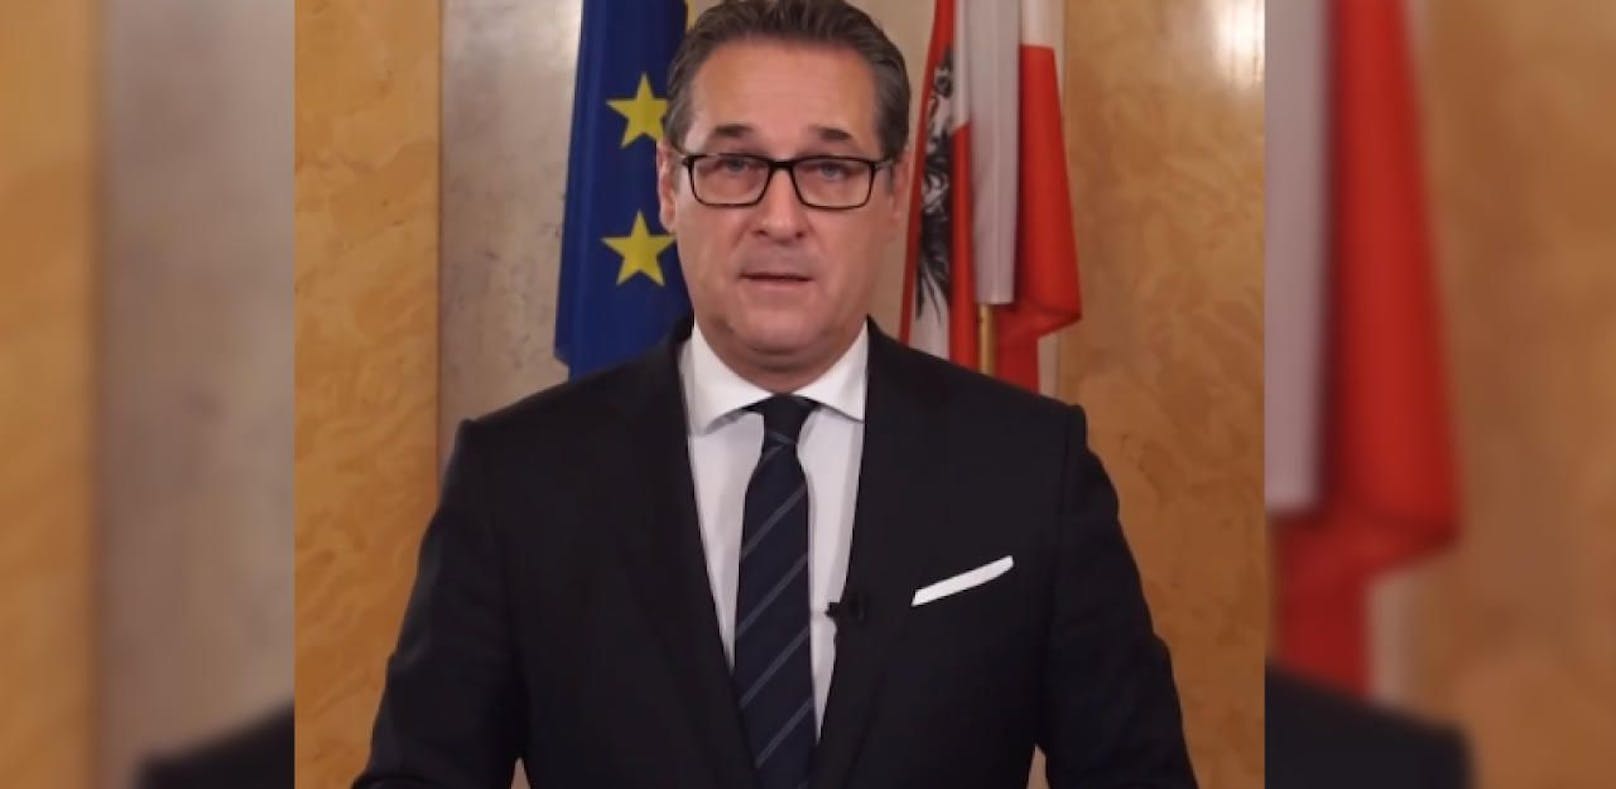 HC Strache spricht über die jüngsten Attacken in Österreich